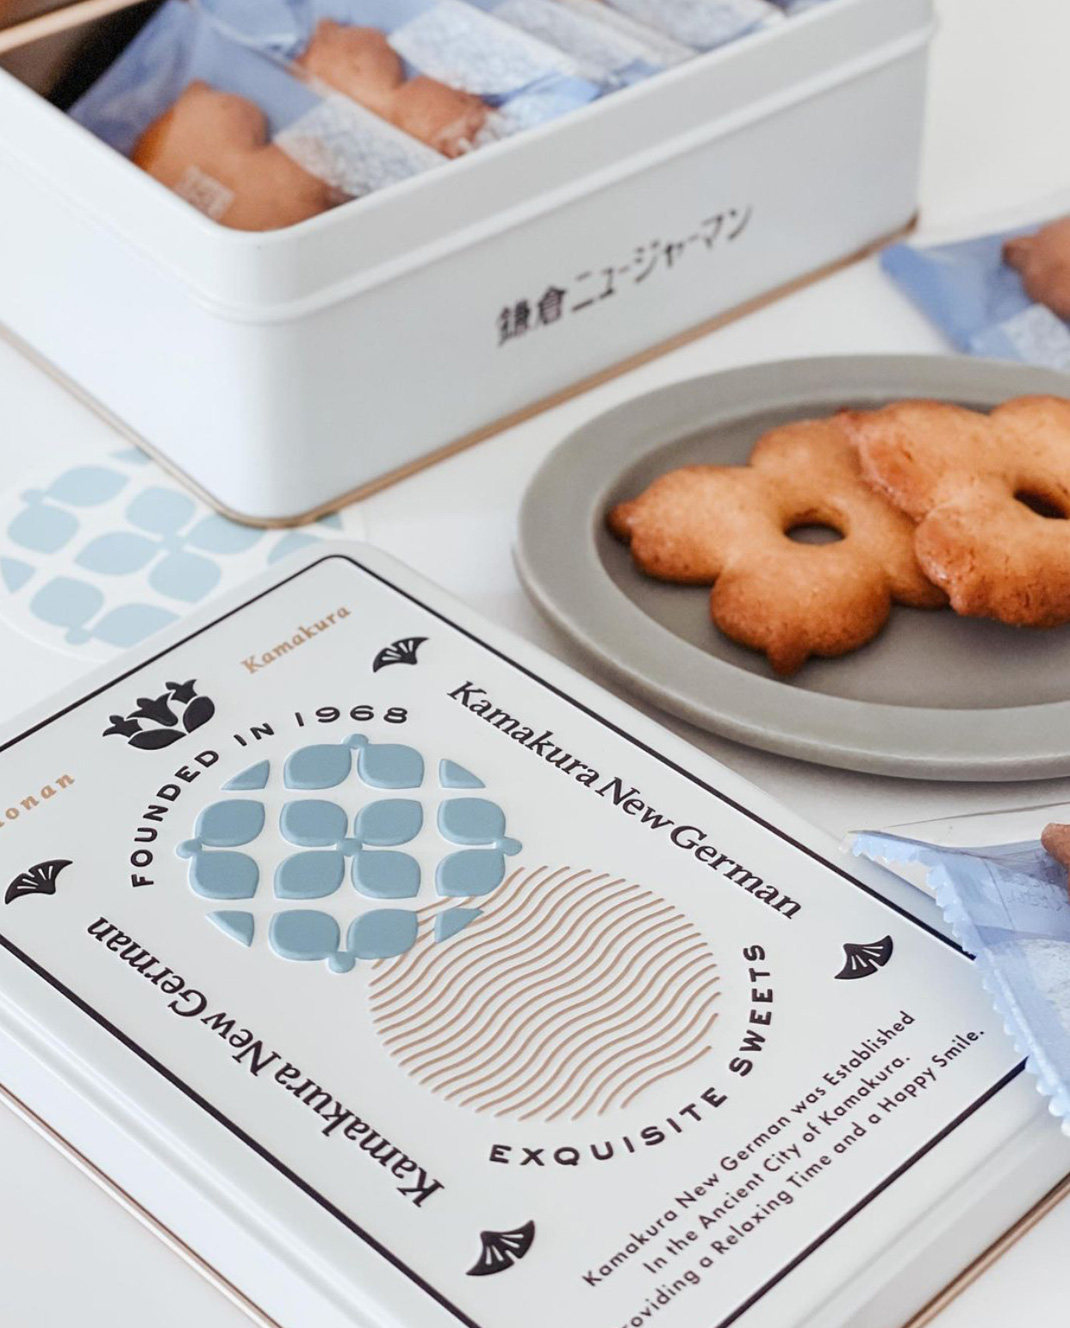 甜品店镰仓新德语 日本 甜品店 字体设计 图形设计 包装设计 logo设计 vi设计 空间设计